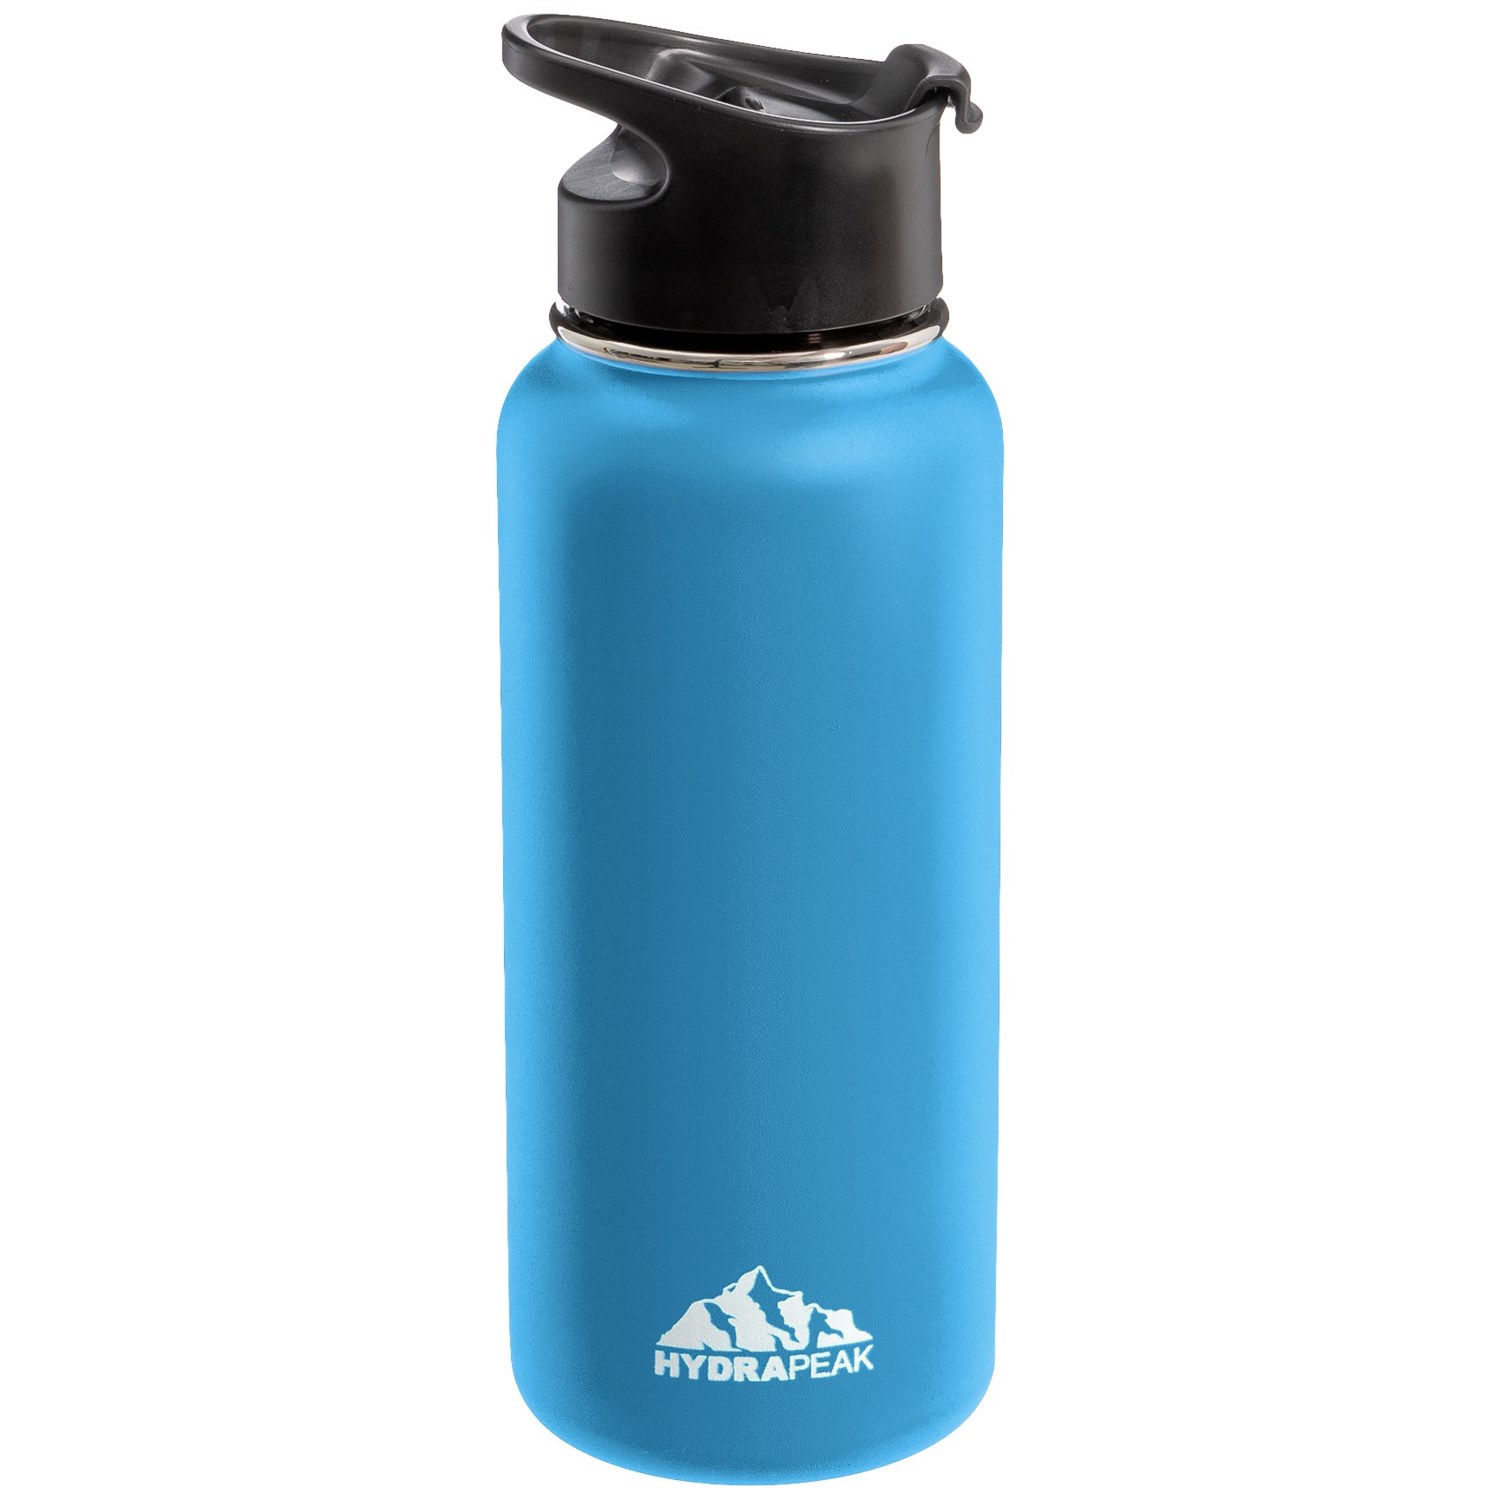 Hydrapeak Wide Mouth Water Bottle – 32 oz. Hydrapeak 32 Oz Wide Mouth Stainless Steel Water Bottle